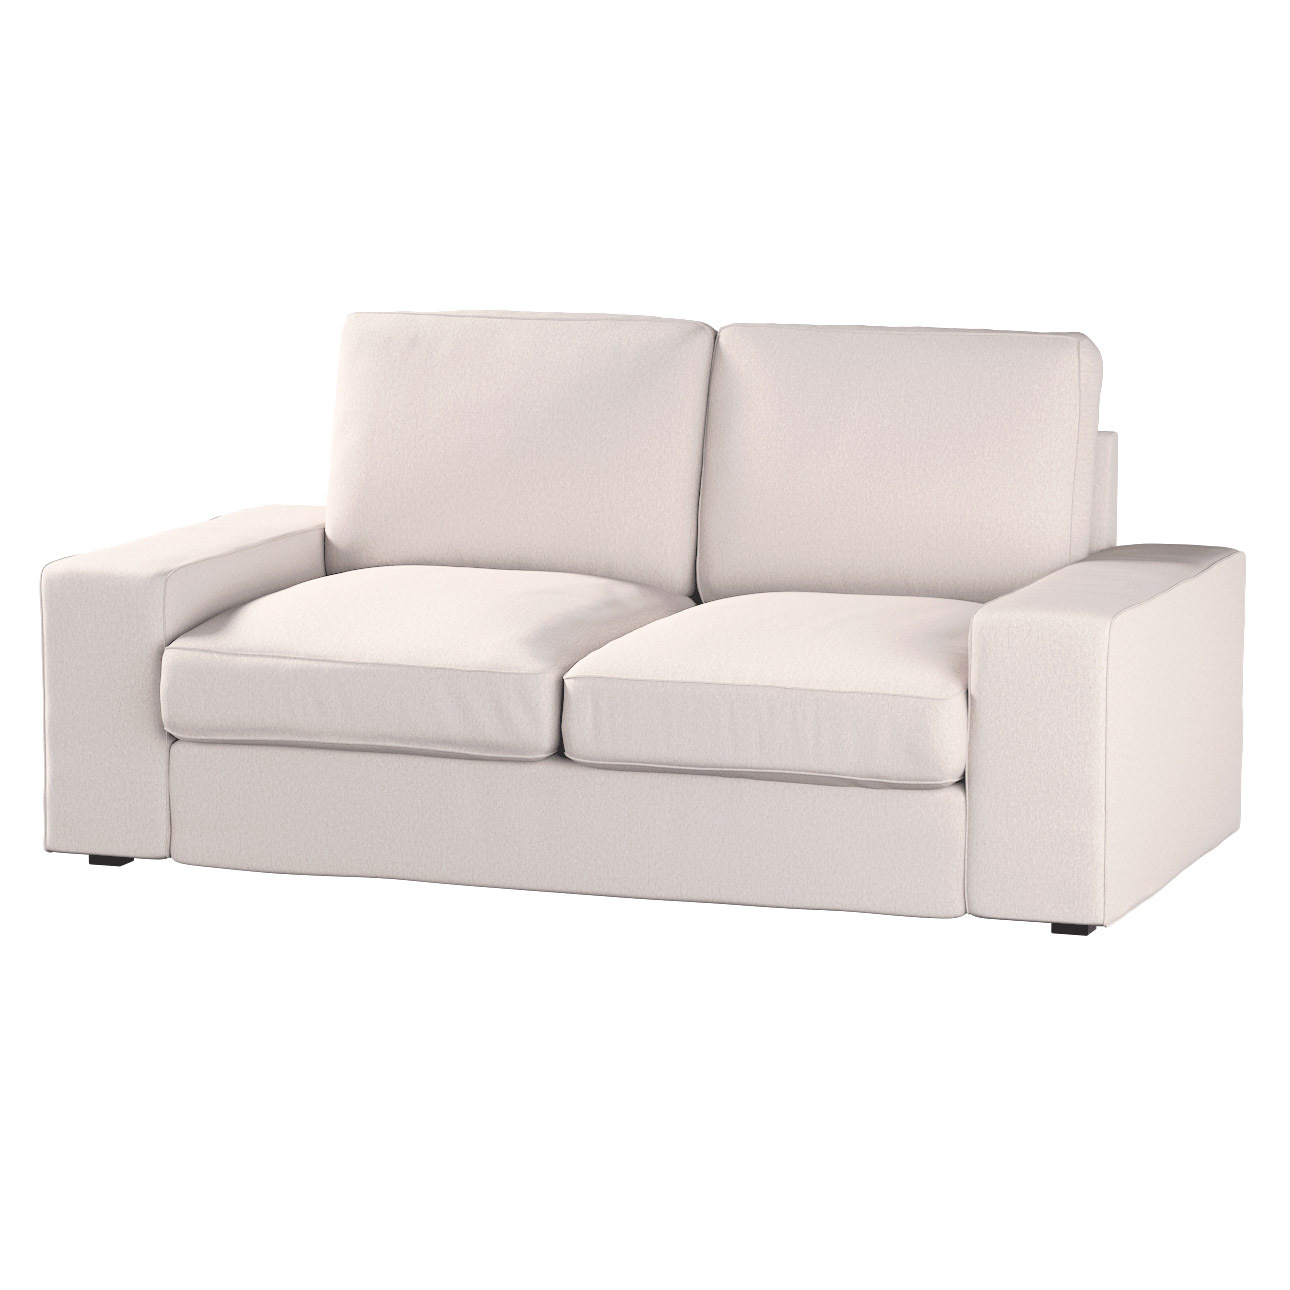 Bezug für Kivik 2-Sitzer Sofa, hellbeige, Bezug für Sofa Kivik 2-Sitzer, Ma günstig online kaufen